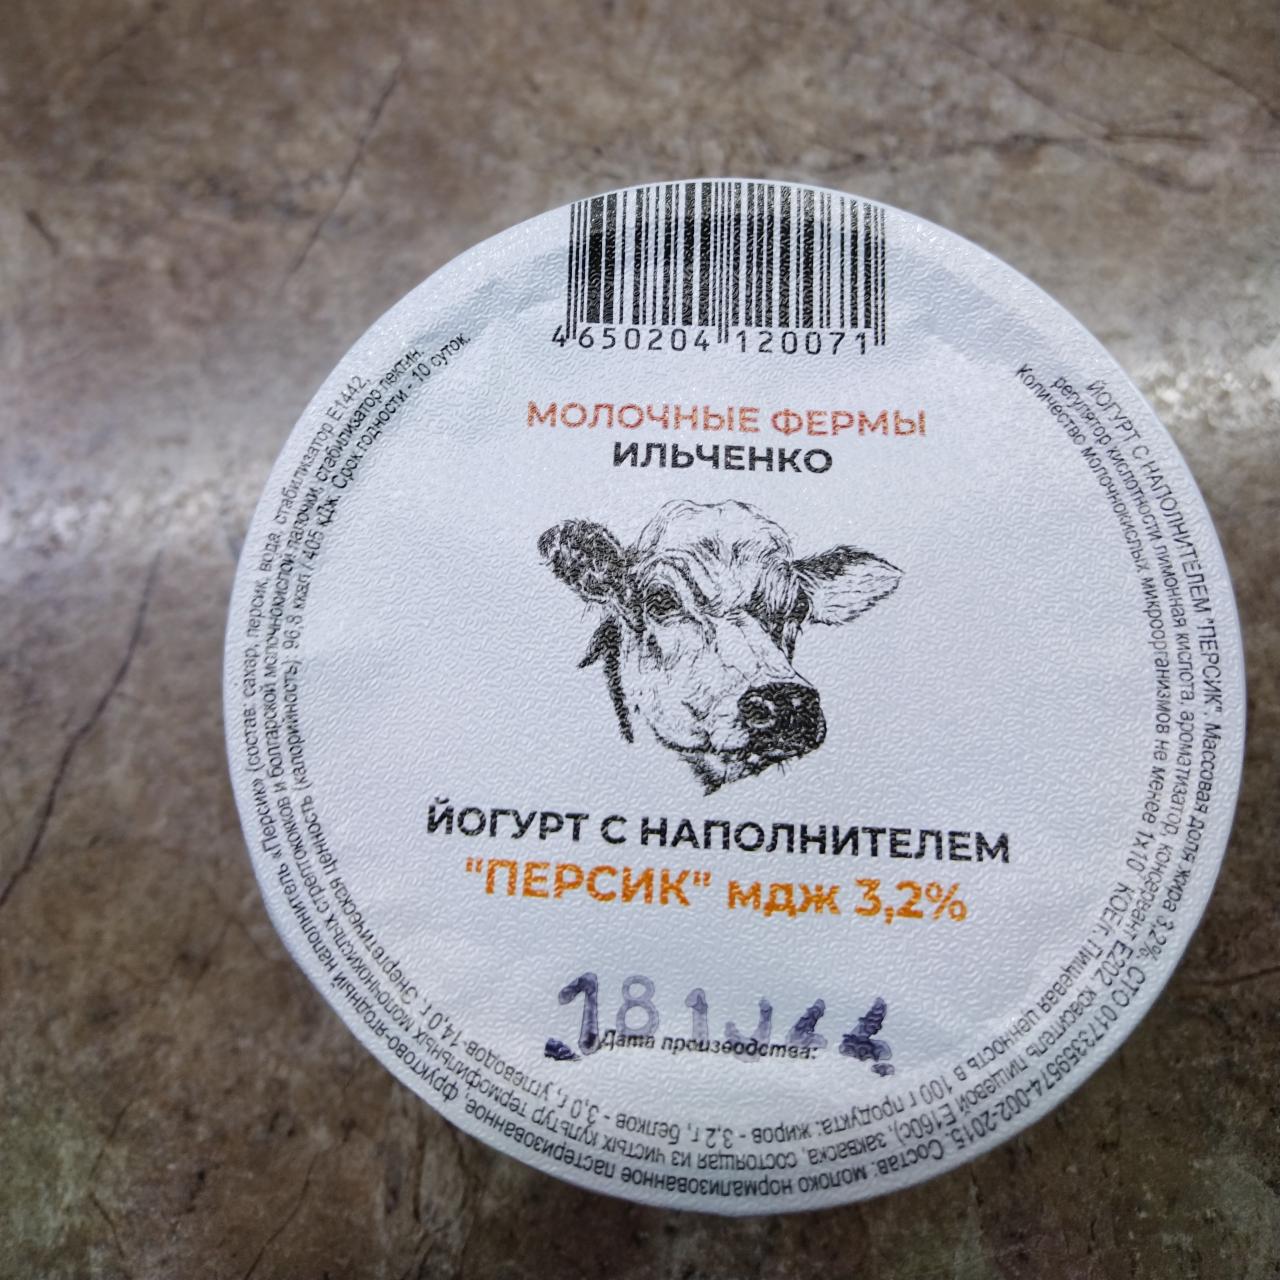 Фото - Йогурт с наполнителем персика 3.2% Молочные фермы Ильченко